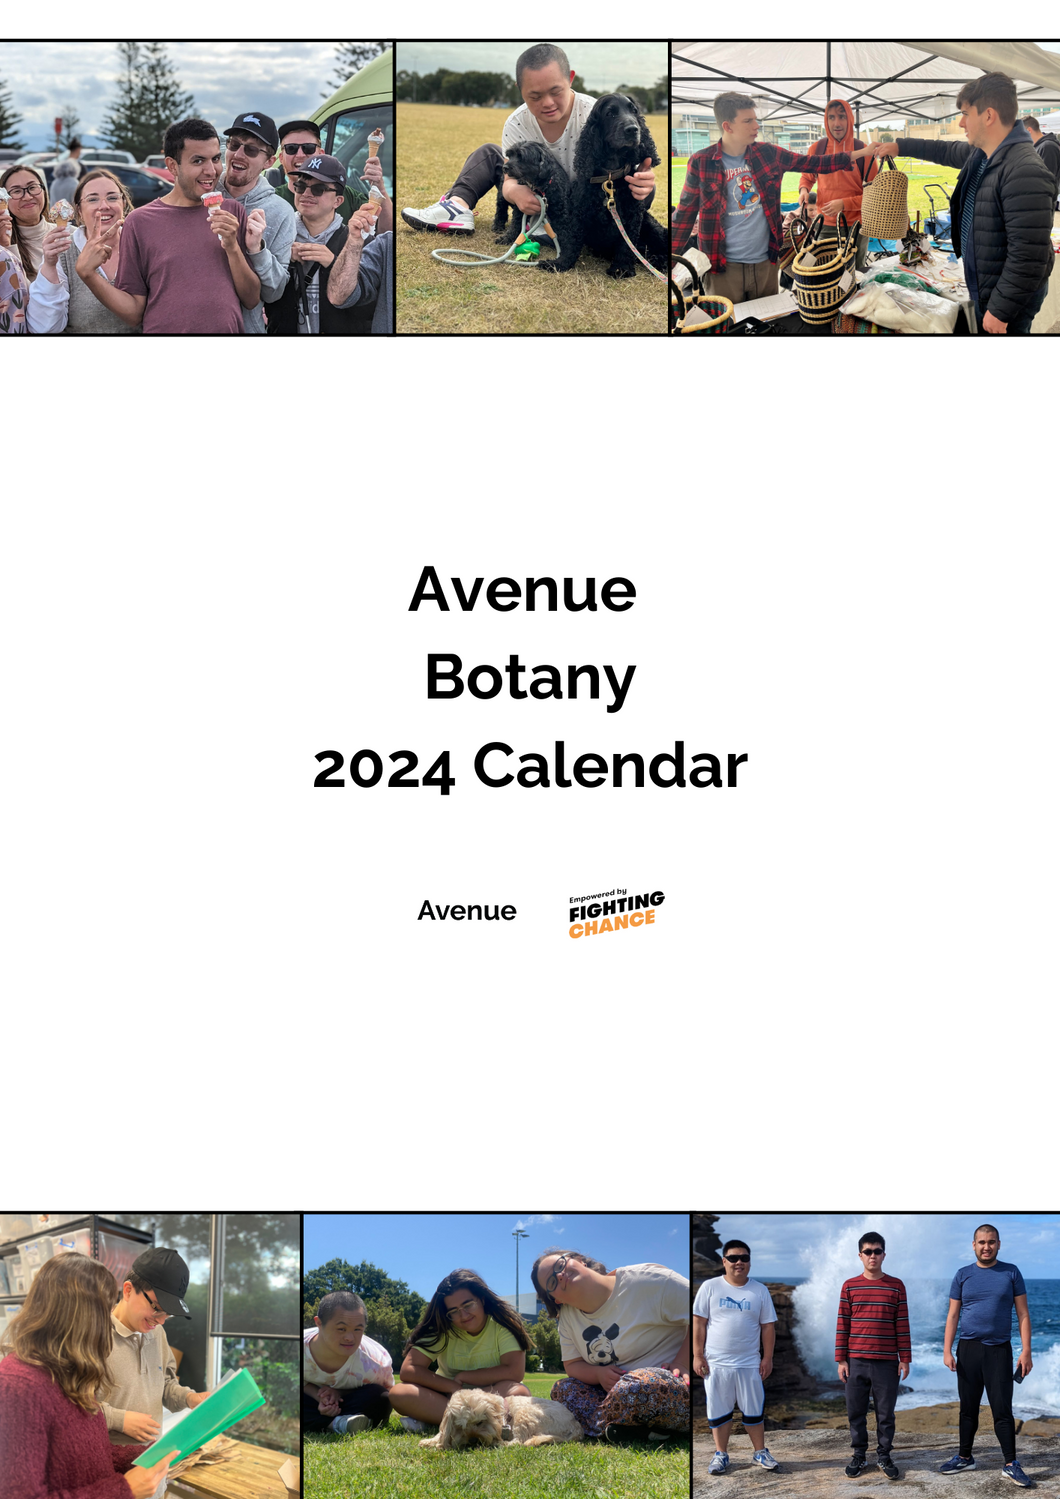 Avenue Botany 2024 Calendar